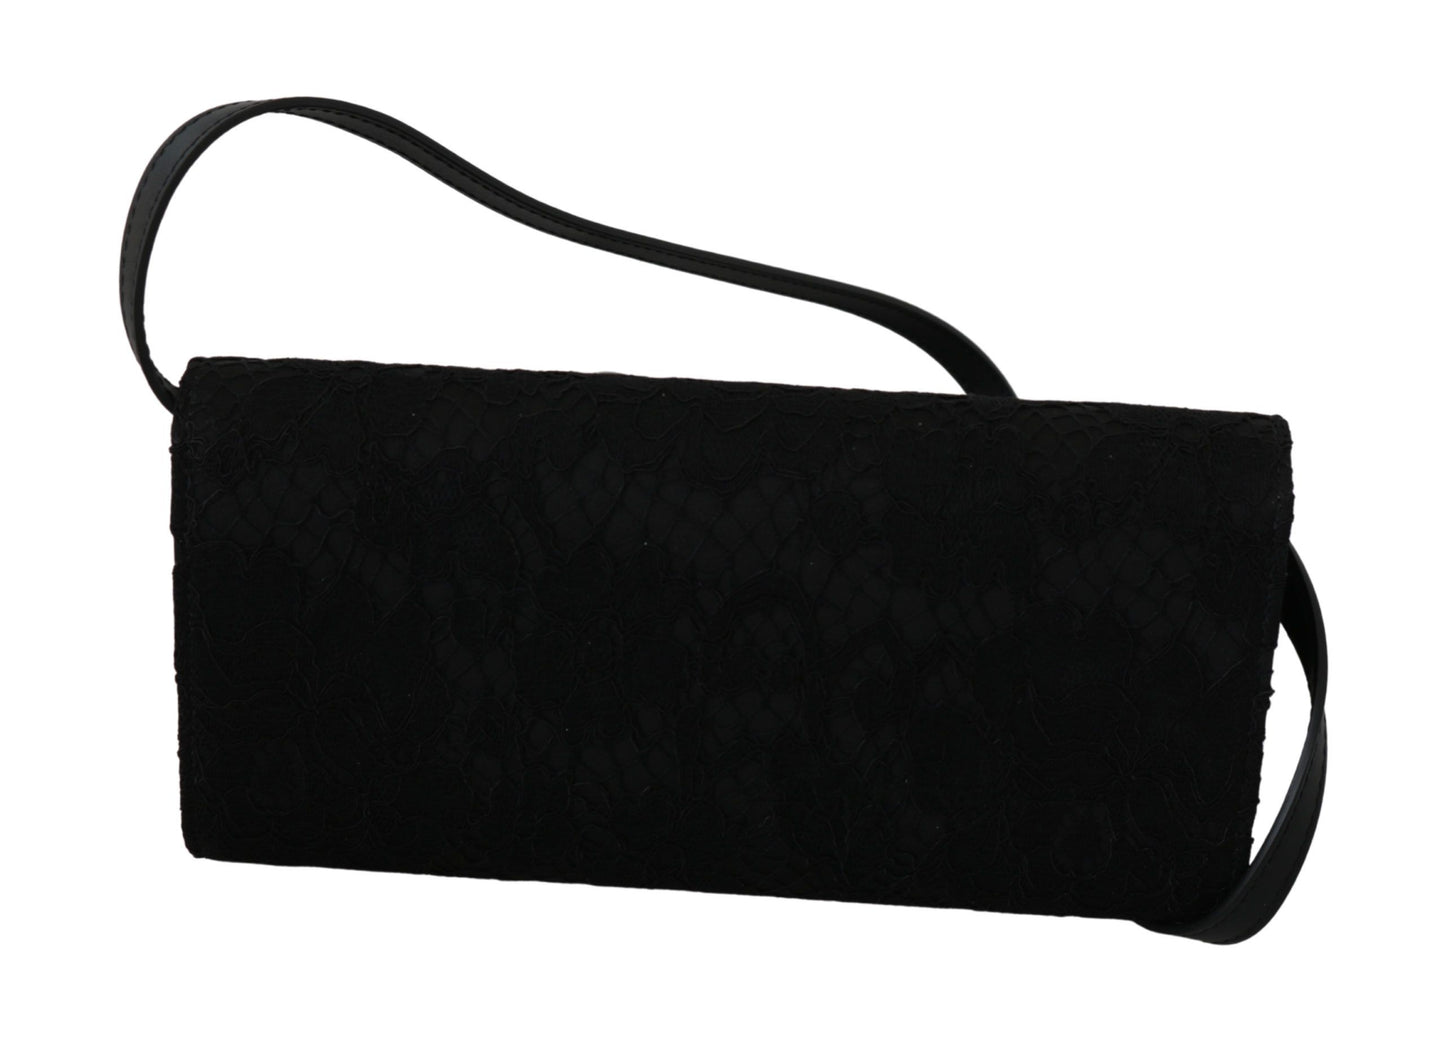 Black Floral Lace Evening Long Clutch Borse Cotton Bag